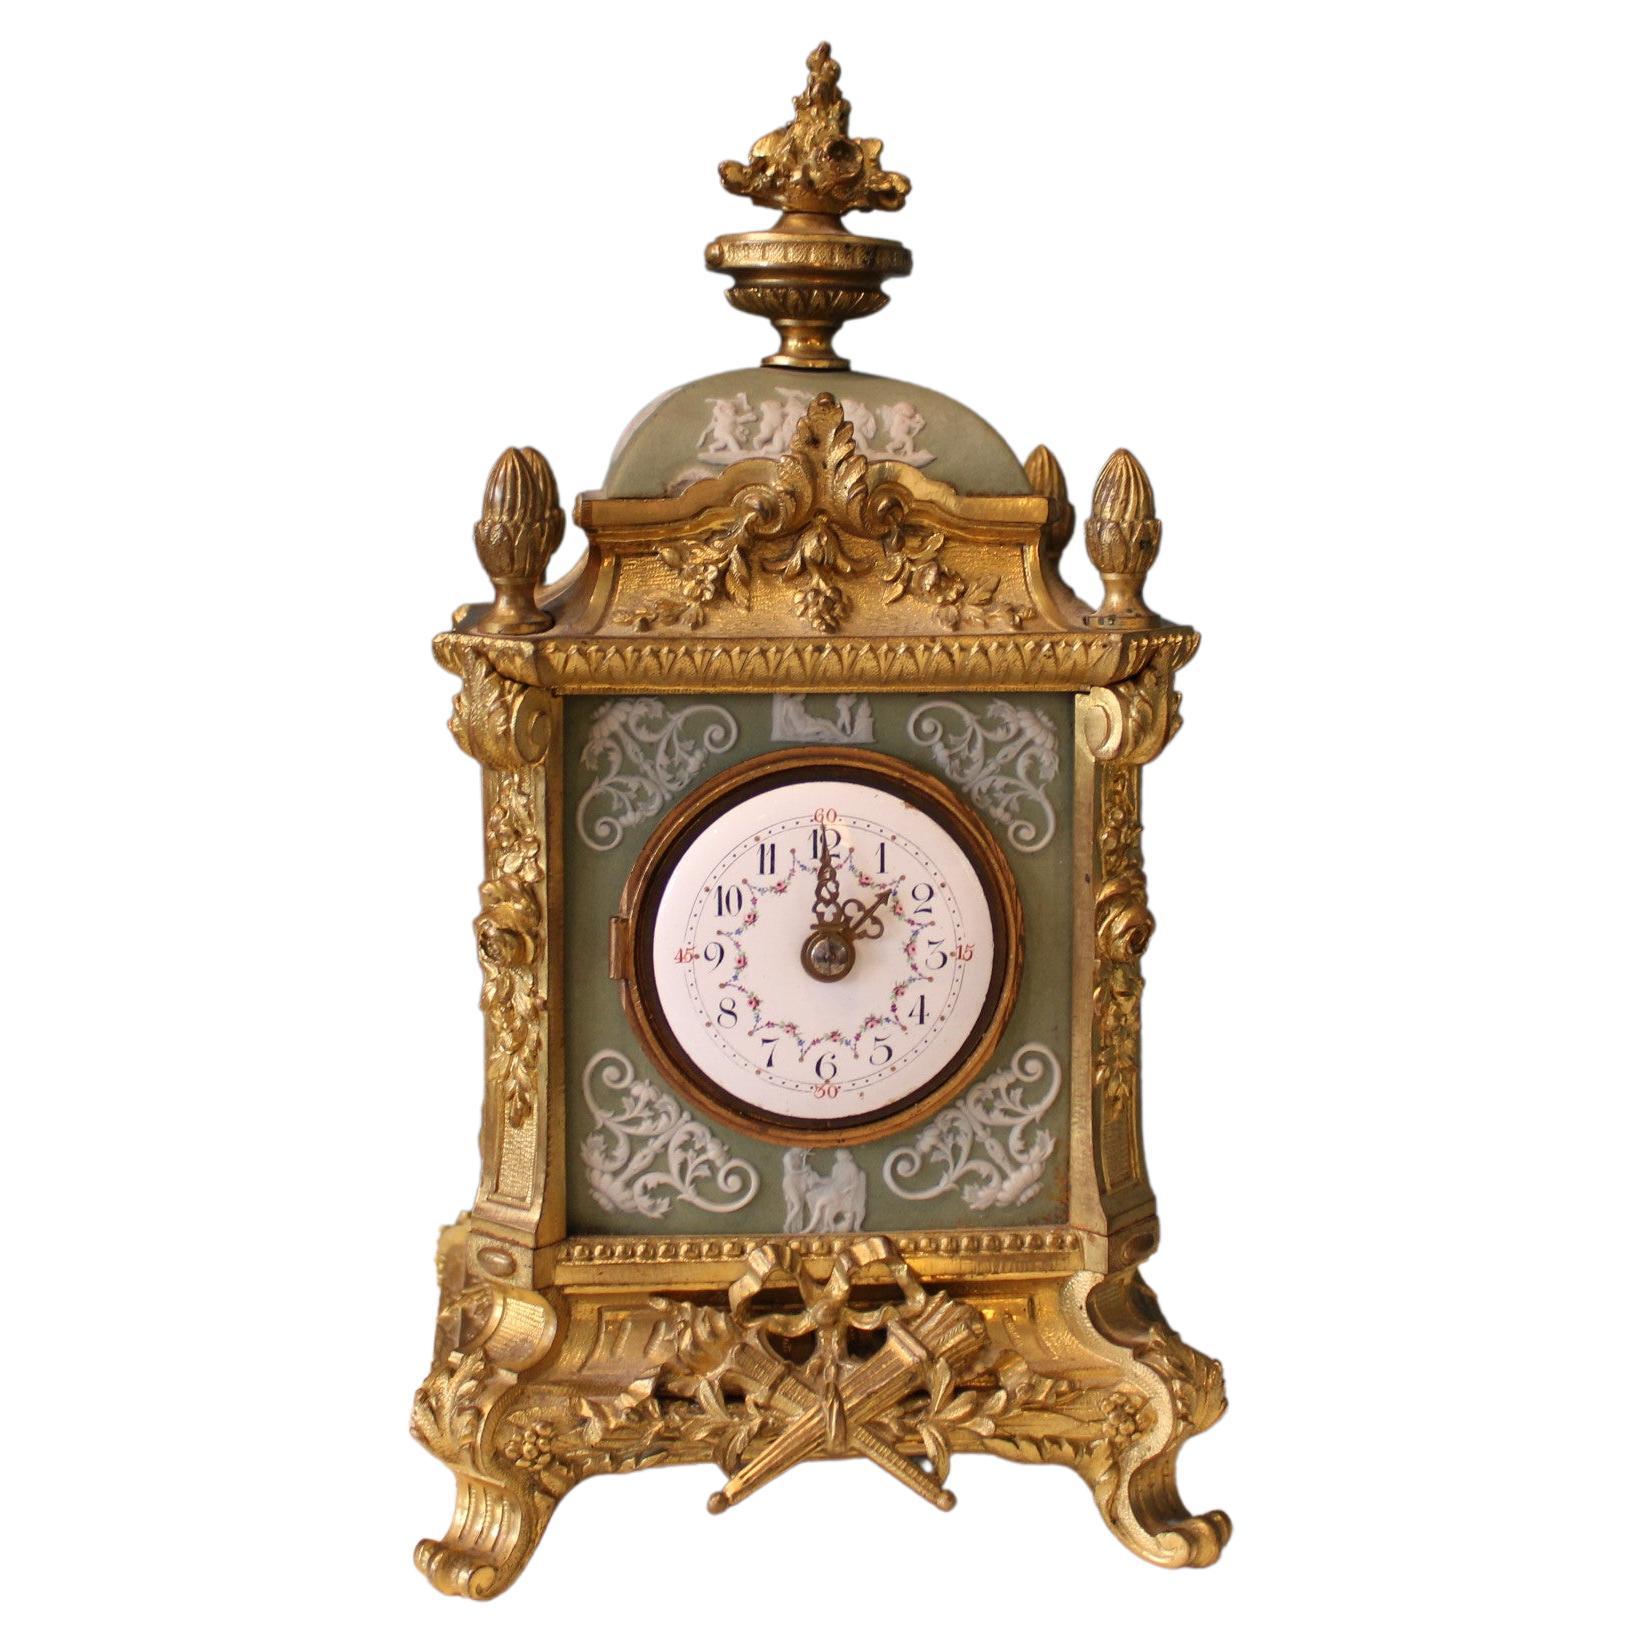 Napoleonische Uhr, Frankreich, 19. Jahrhundert